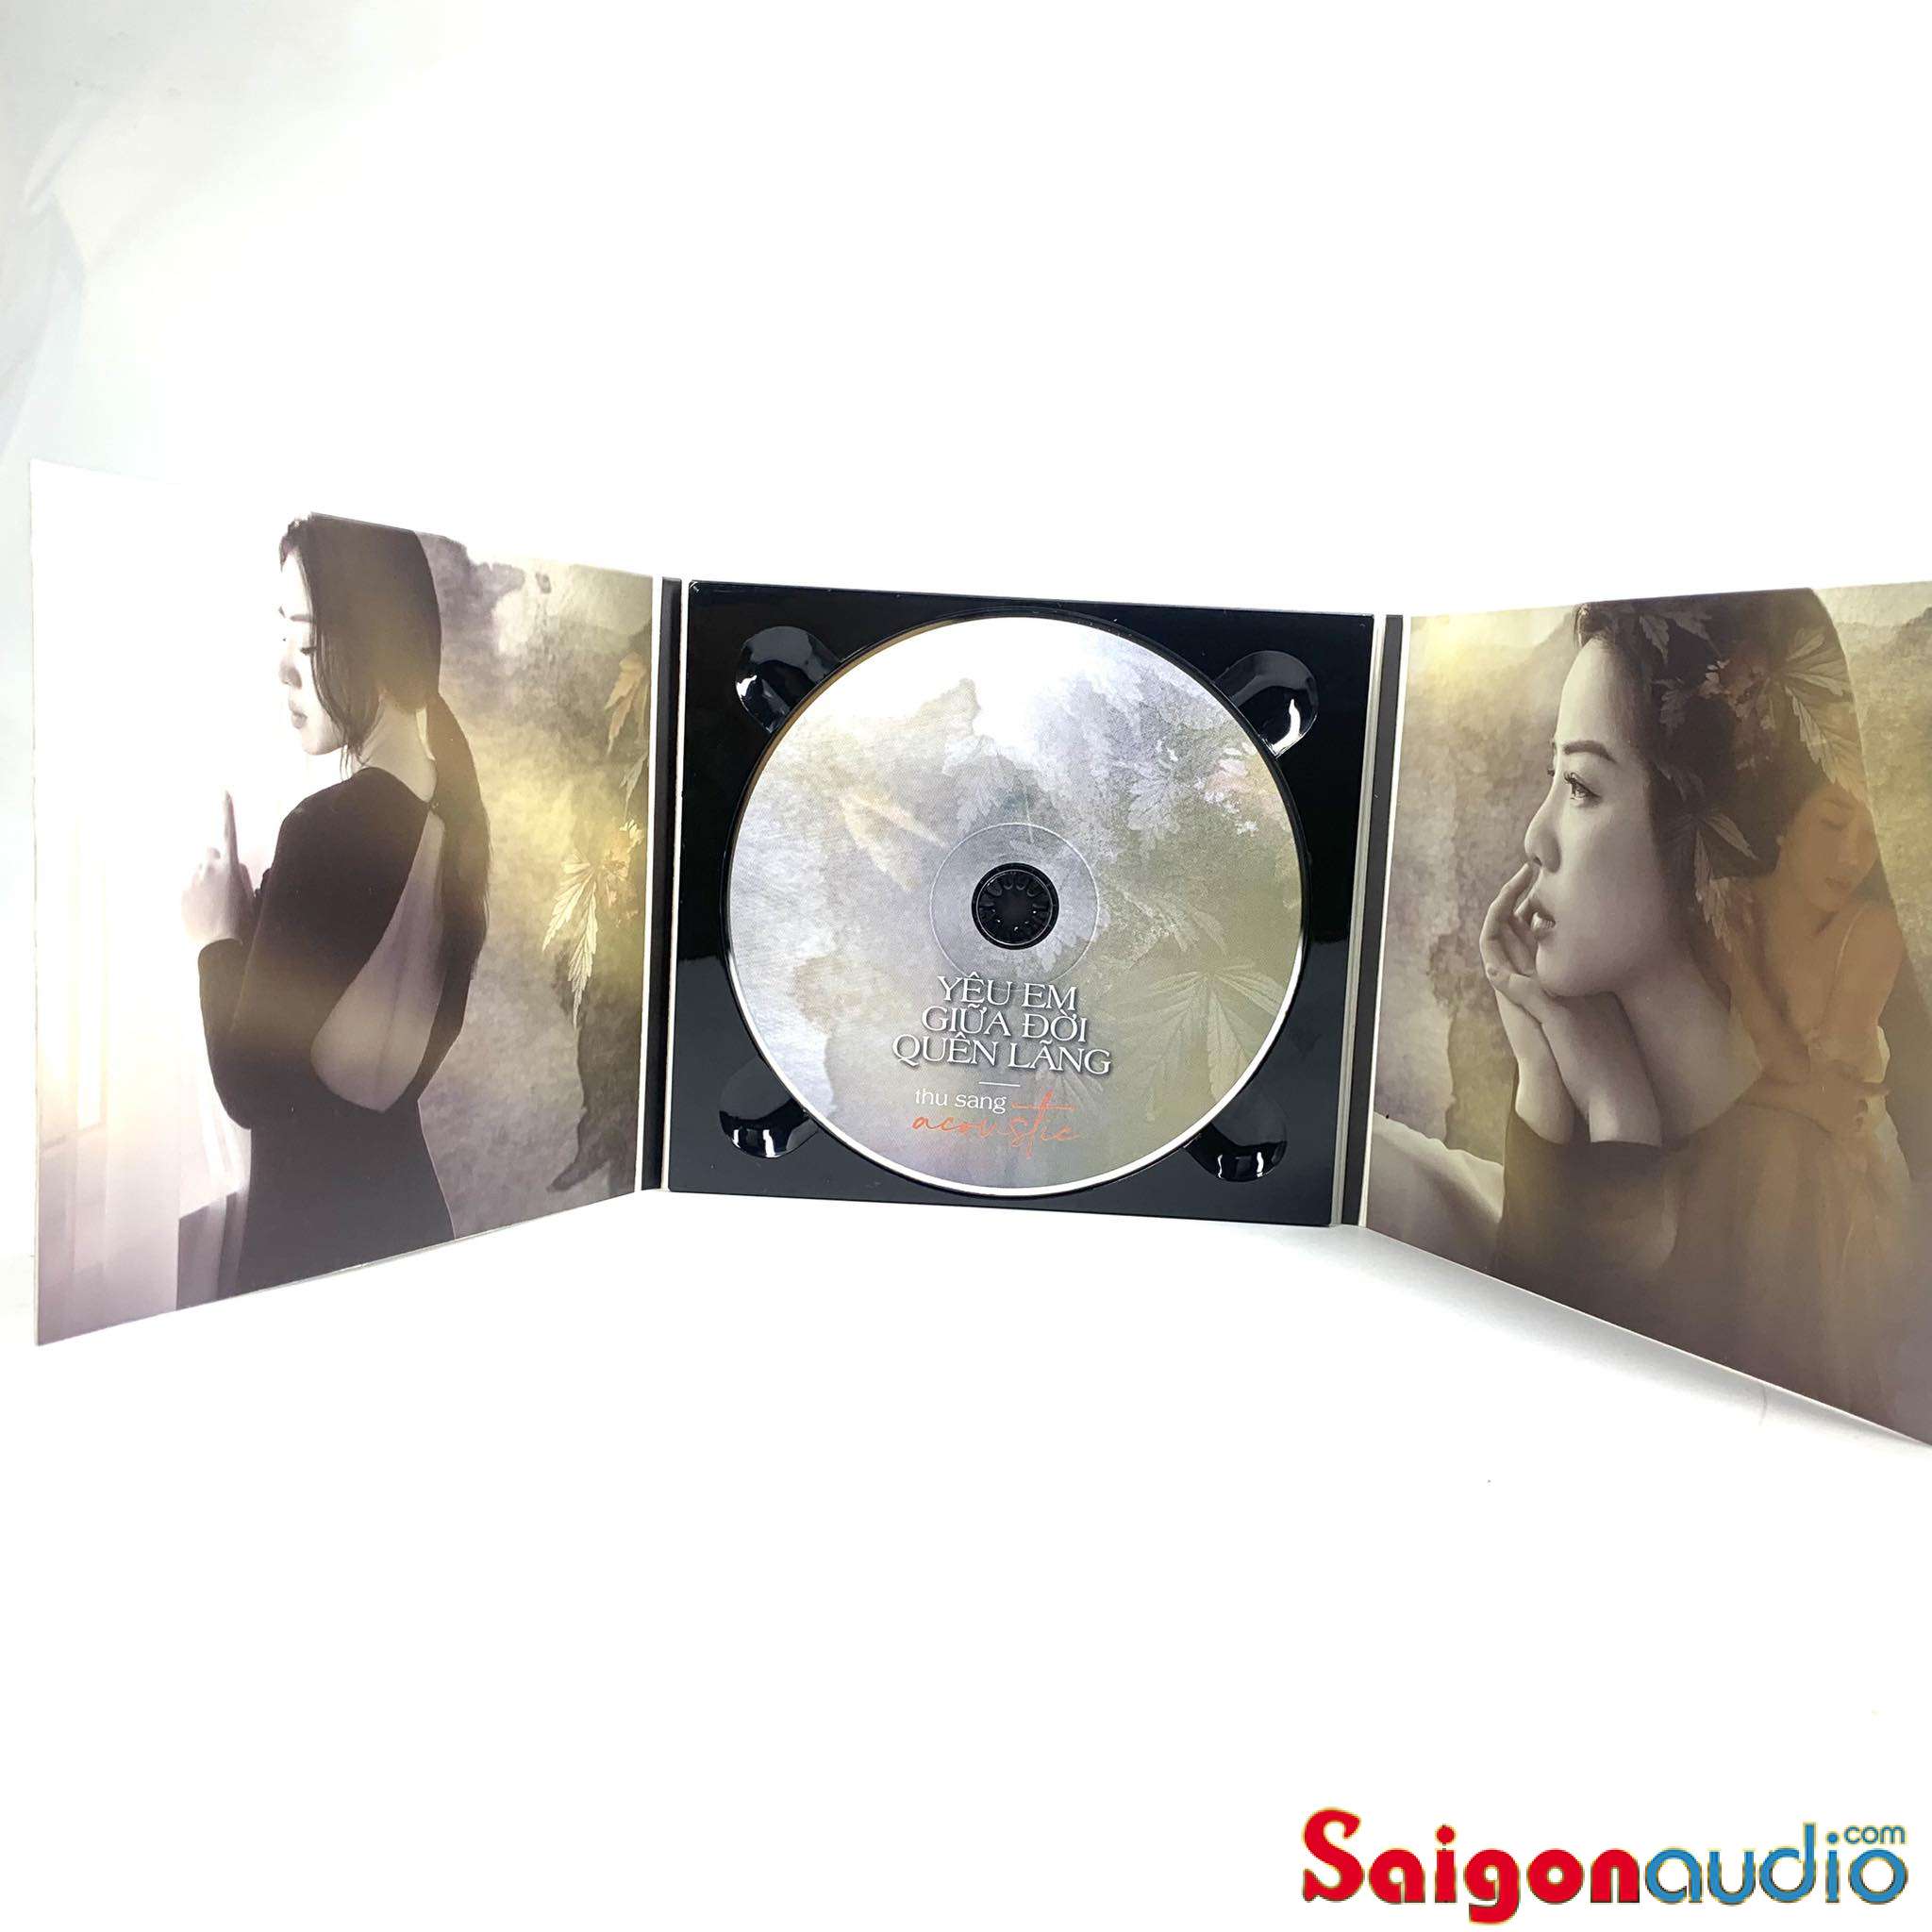 Đĩa CD gốc Thu Sang Acoustic - Yêu Em Giữa Đời Quên Lãng (Free ship khi mua 2 đĩa CD cùng hoặc khác loại)